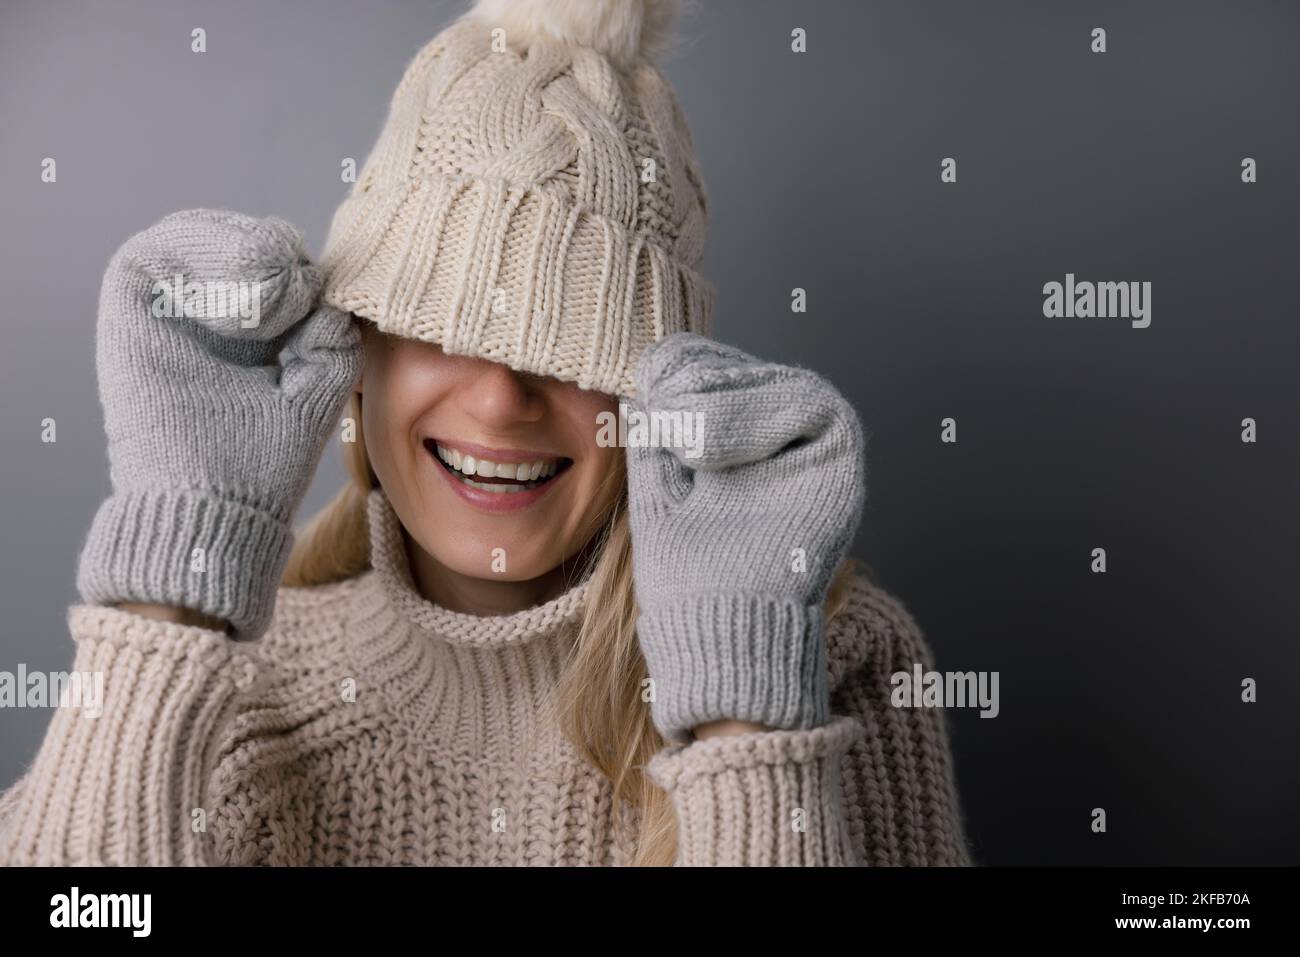 Fröhliche lächelnde Frau versteckt Gesicht unter gestricktem Wollhut. Trendige Wintermode-Kleidung Stockfoto